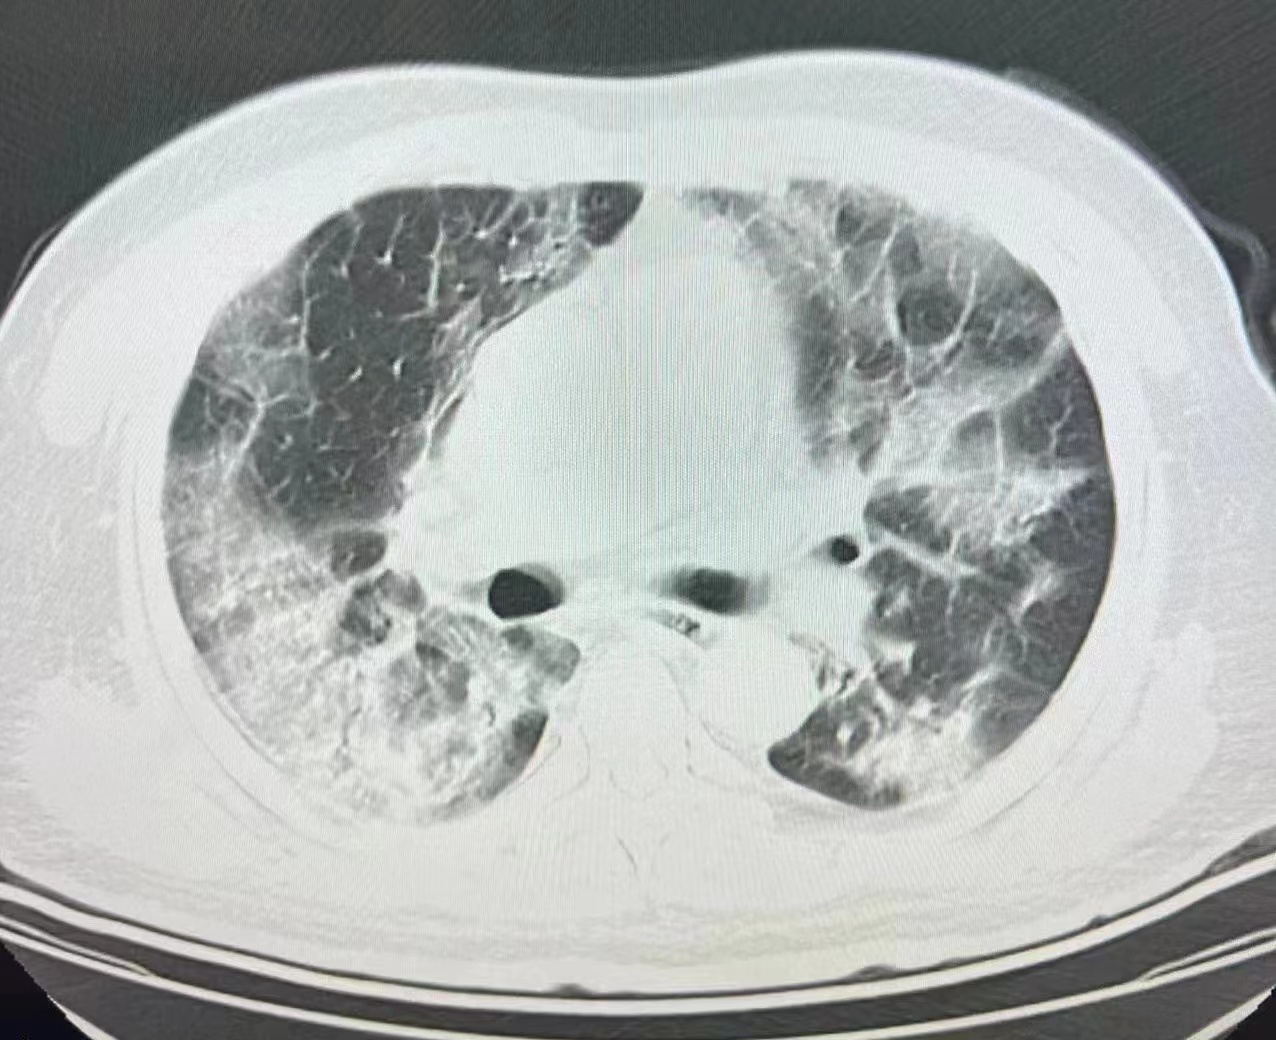 E诊断：肺气肿的影像表现及图像-搜狐